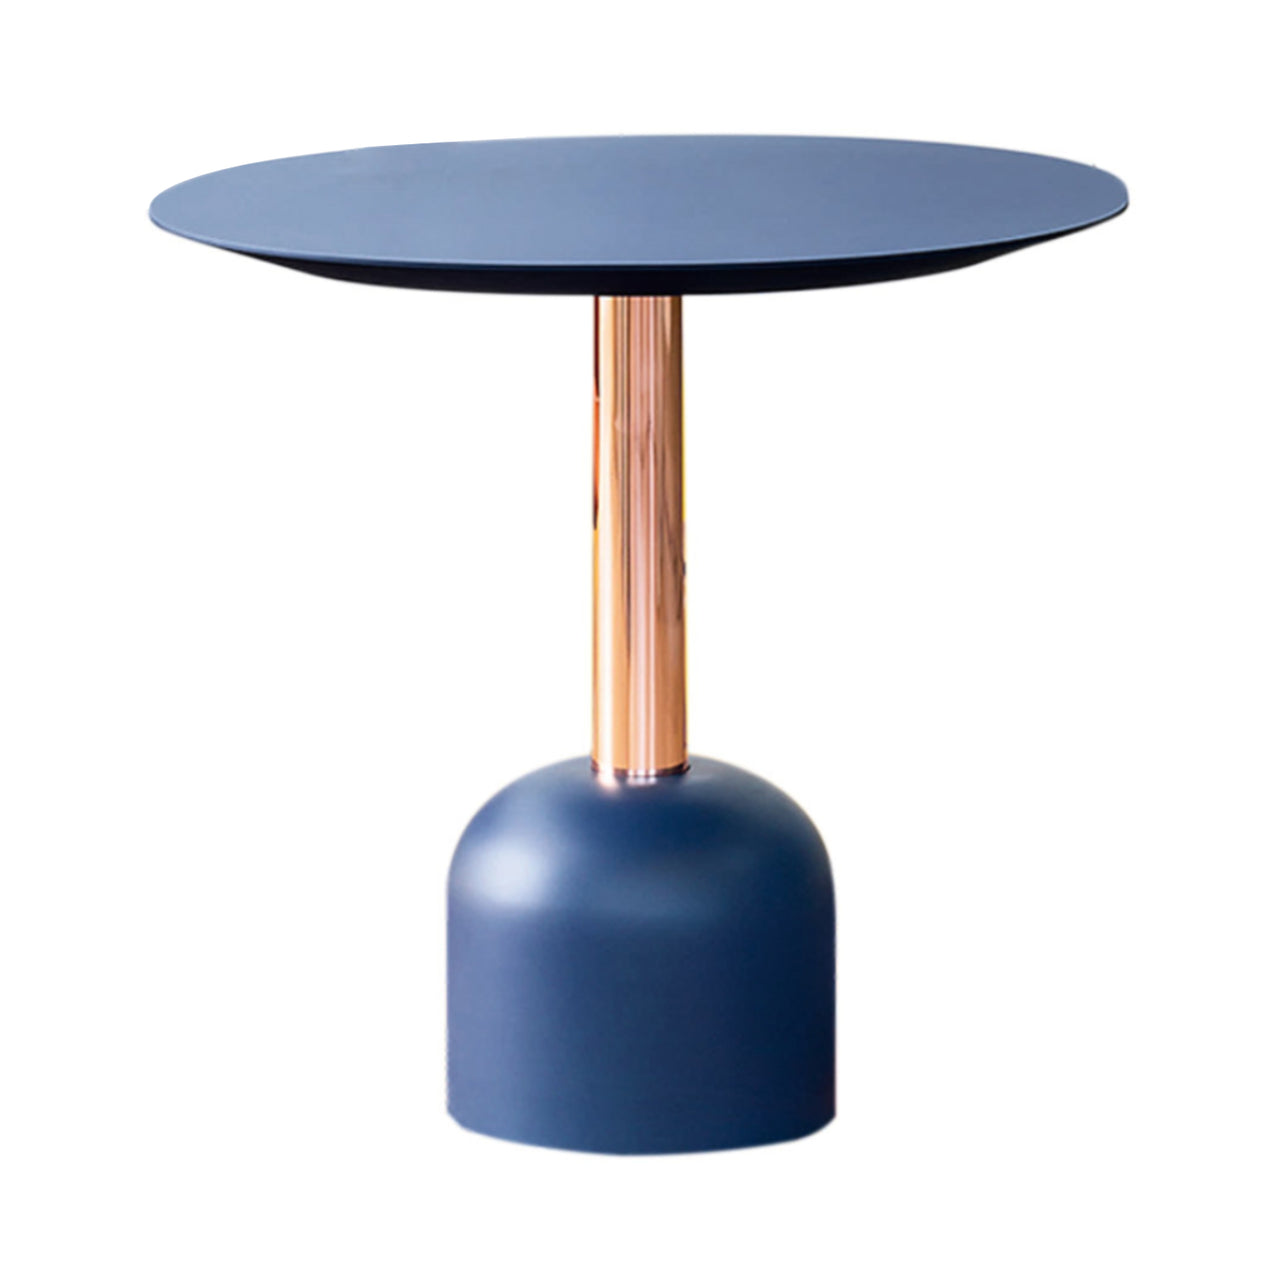 Illo Small Round Dining Table: Lacquered Bisanzio + Lacquered Bisanzio + Copper